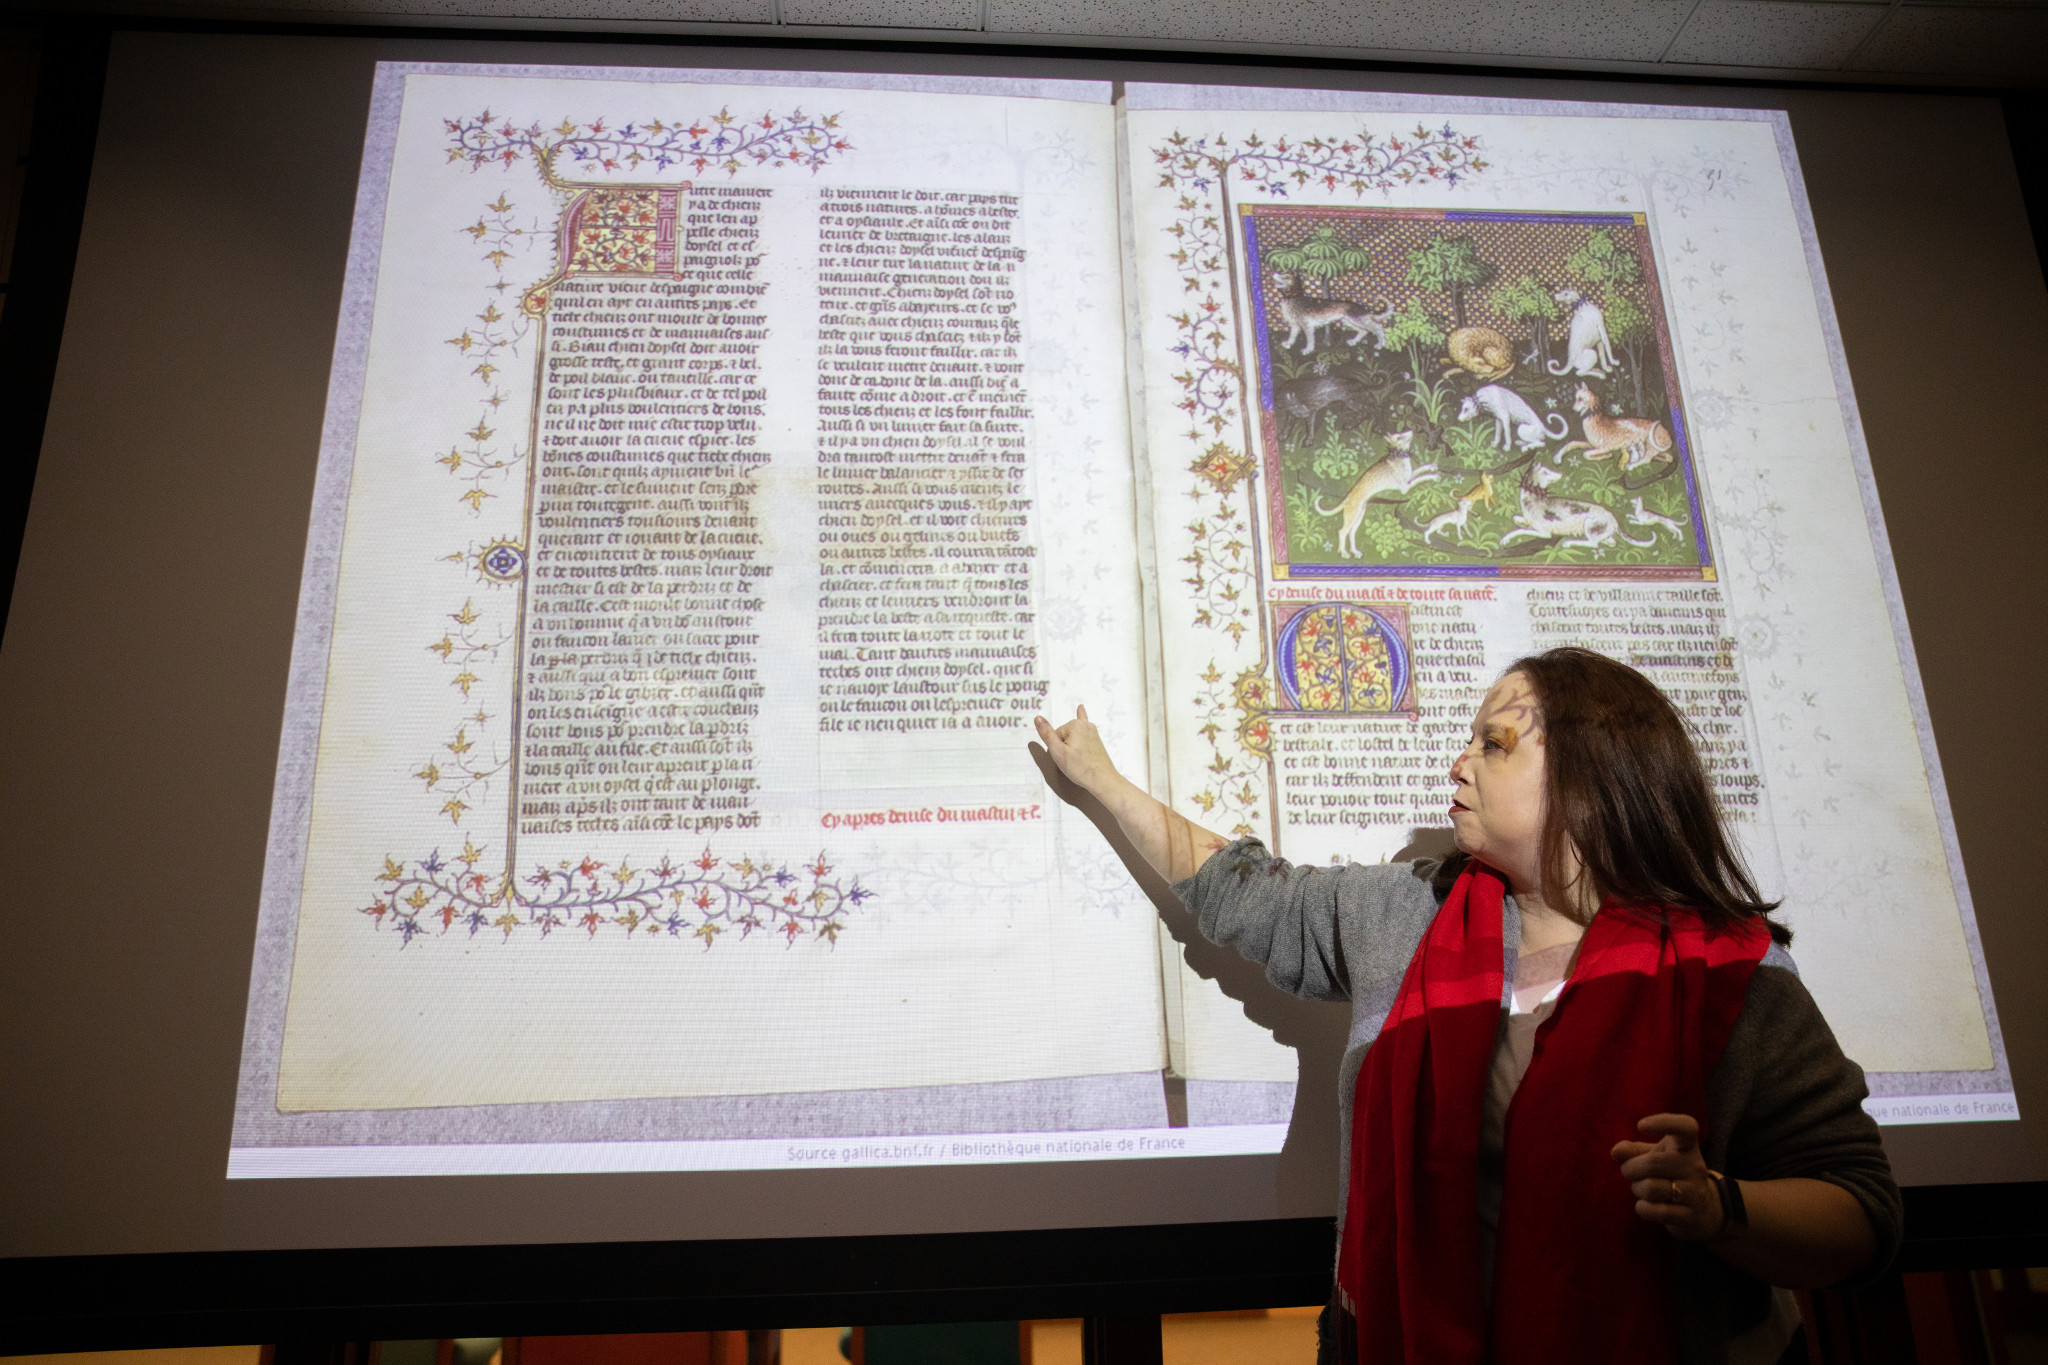 illuminated medieval text